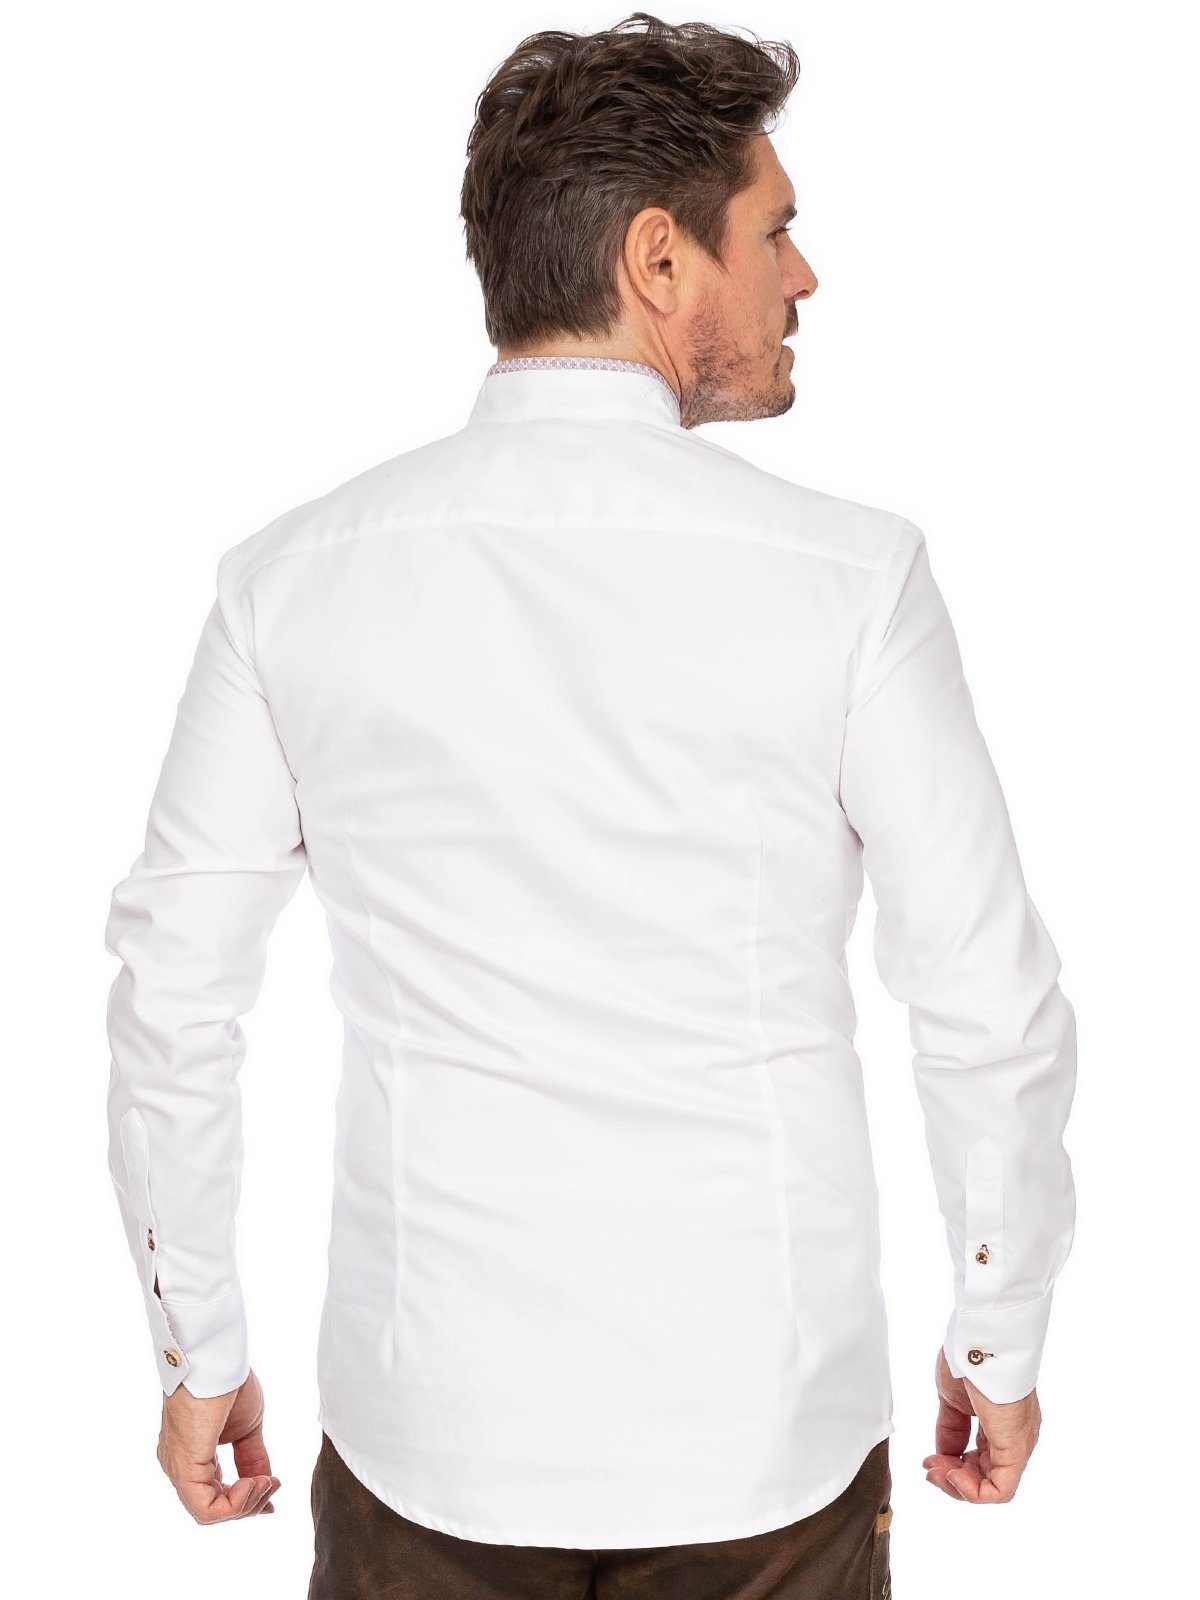 Gipfelstürmer Trachtenhemd Hemd Stehkragen 420004-3829-138 (Slim hochrot weiß